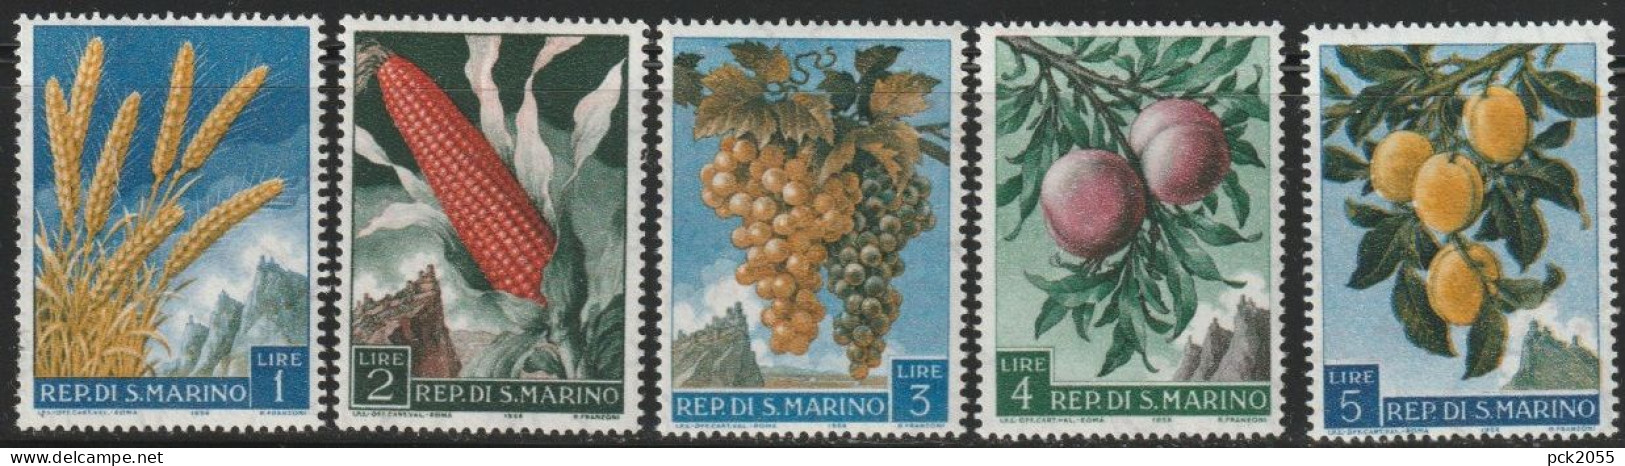 San Marino 1958 Mi Nr. 594 - 598 ** Postfrisch Früchte ( 632) Günstige Versandkosten - Neufs